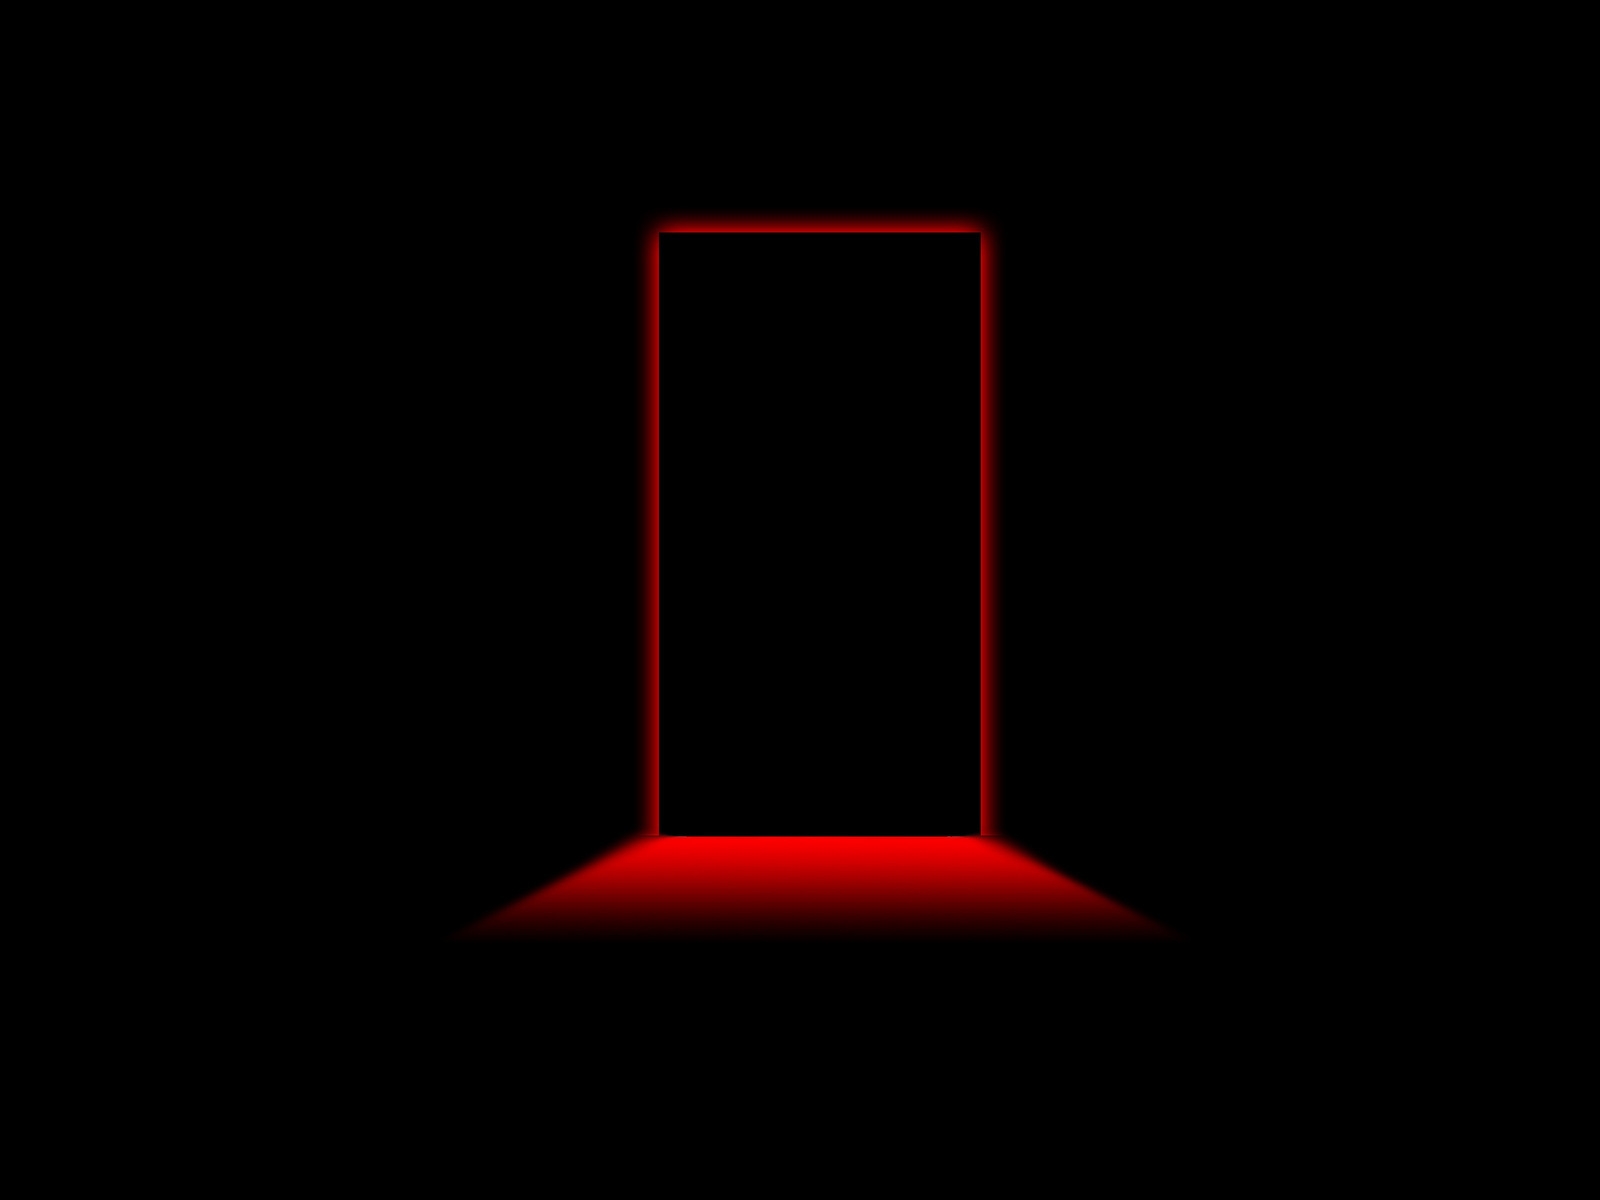 Door Red Light for 1600 x 1200 resolution